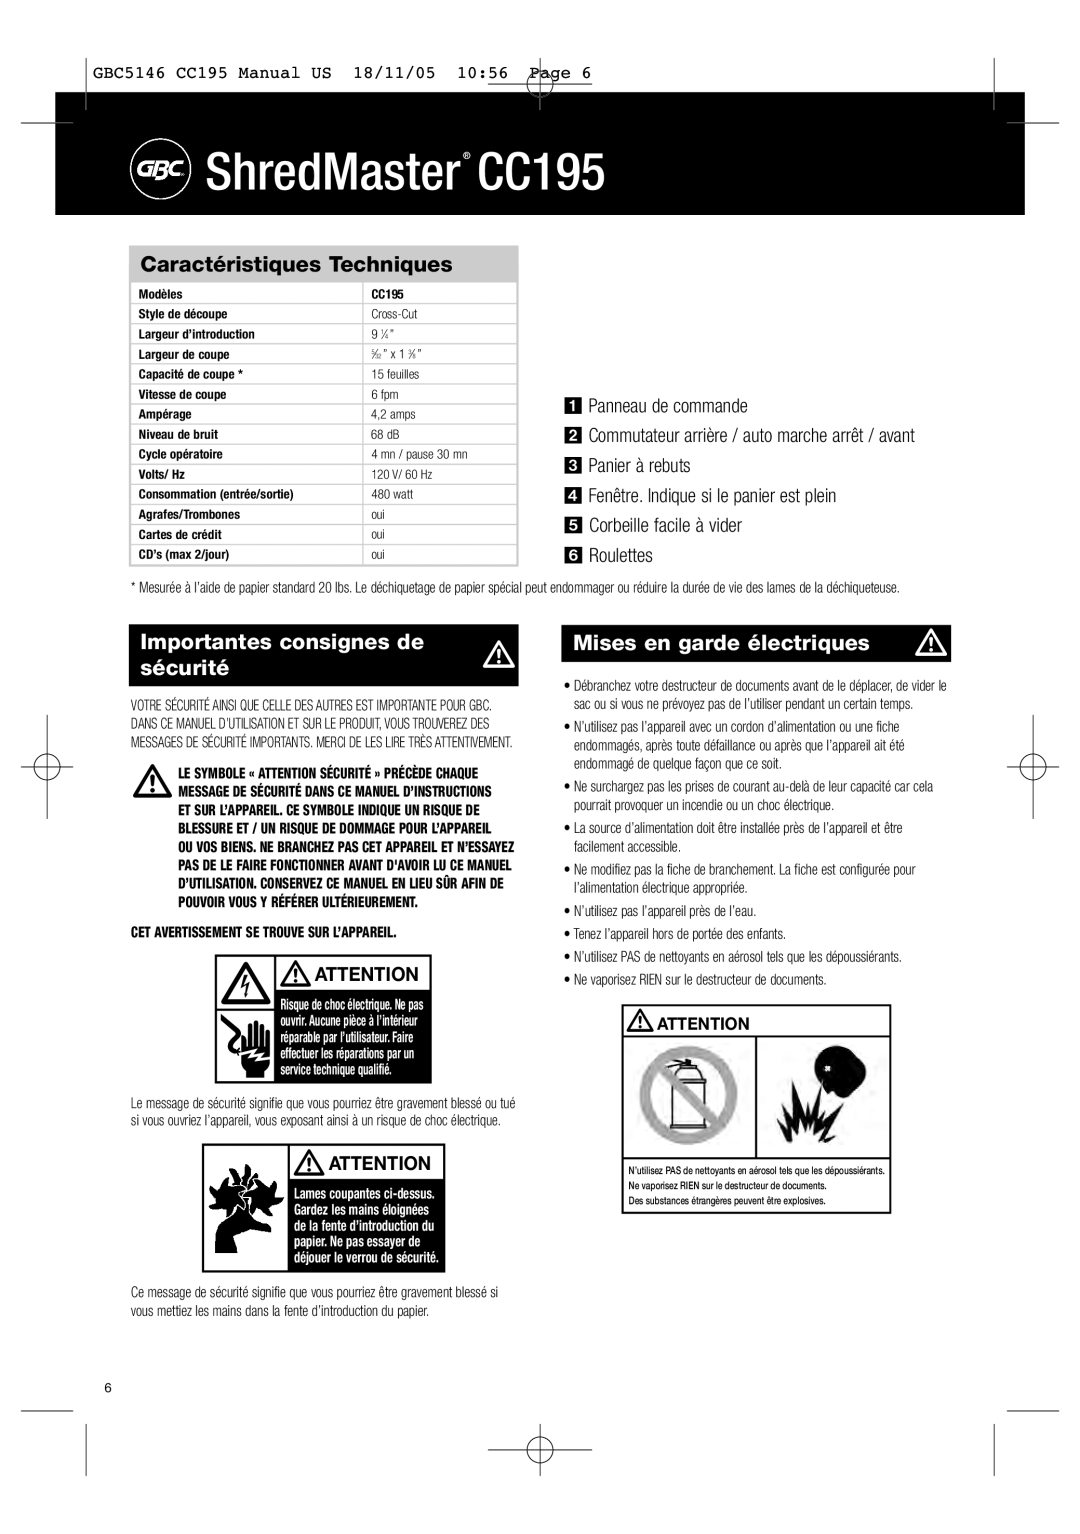 GBC instruction manual Importantes consignes de, sécurité, Mises en garde électriques, ShredMaster CC195 